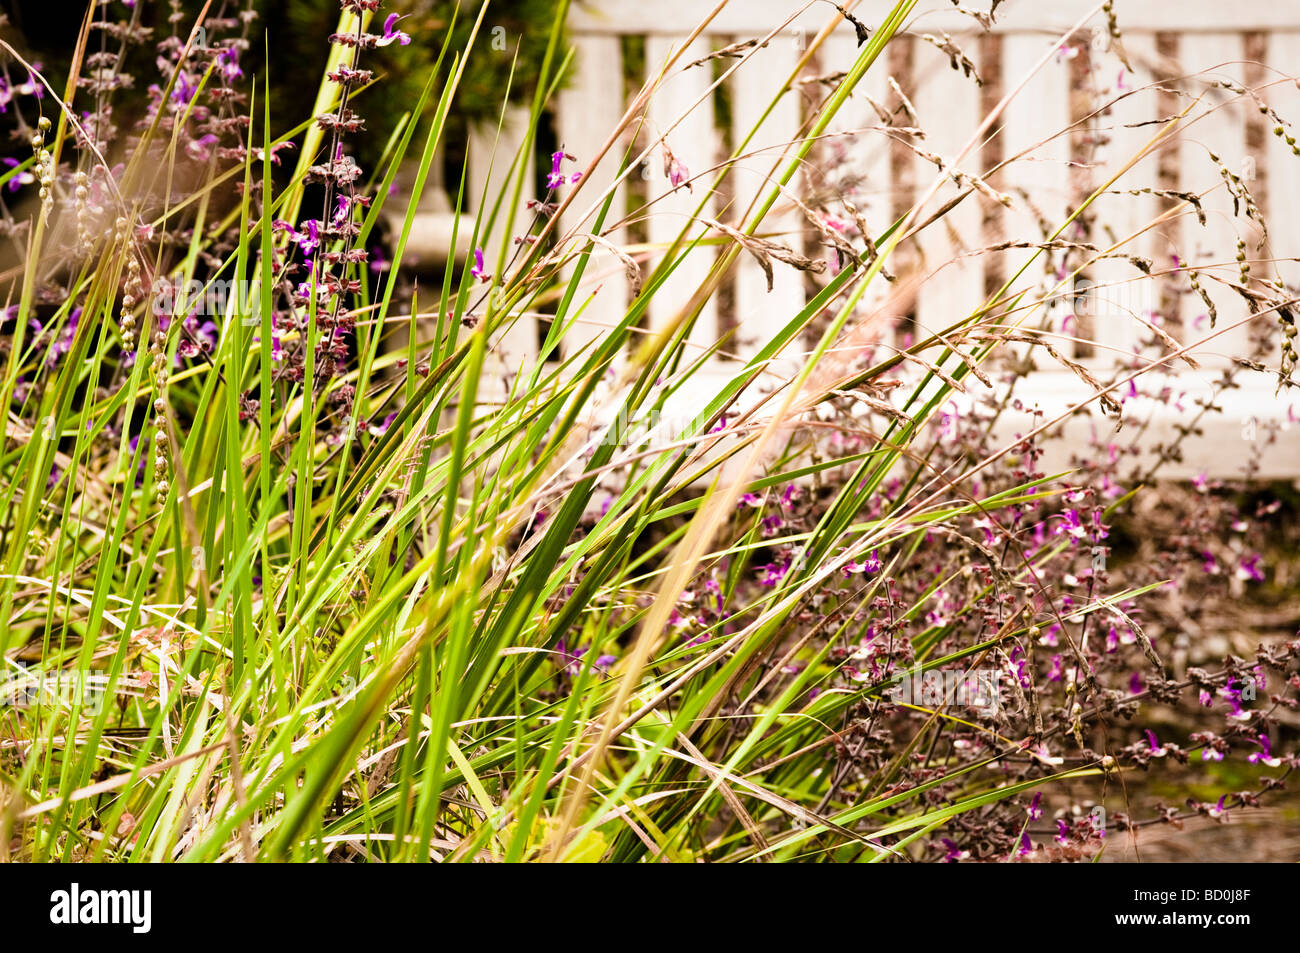 Banc de jardin avec bouquet d'herbes et de la salvia en premier plan, à la maison du jardin, Devon, UK Banque D'Images